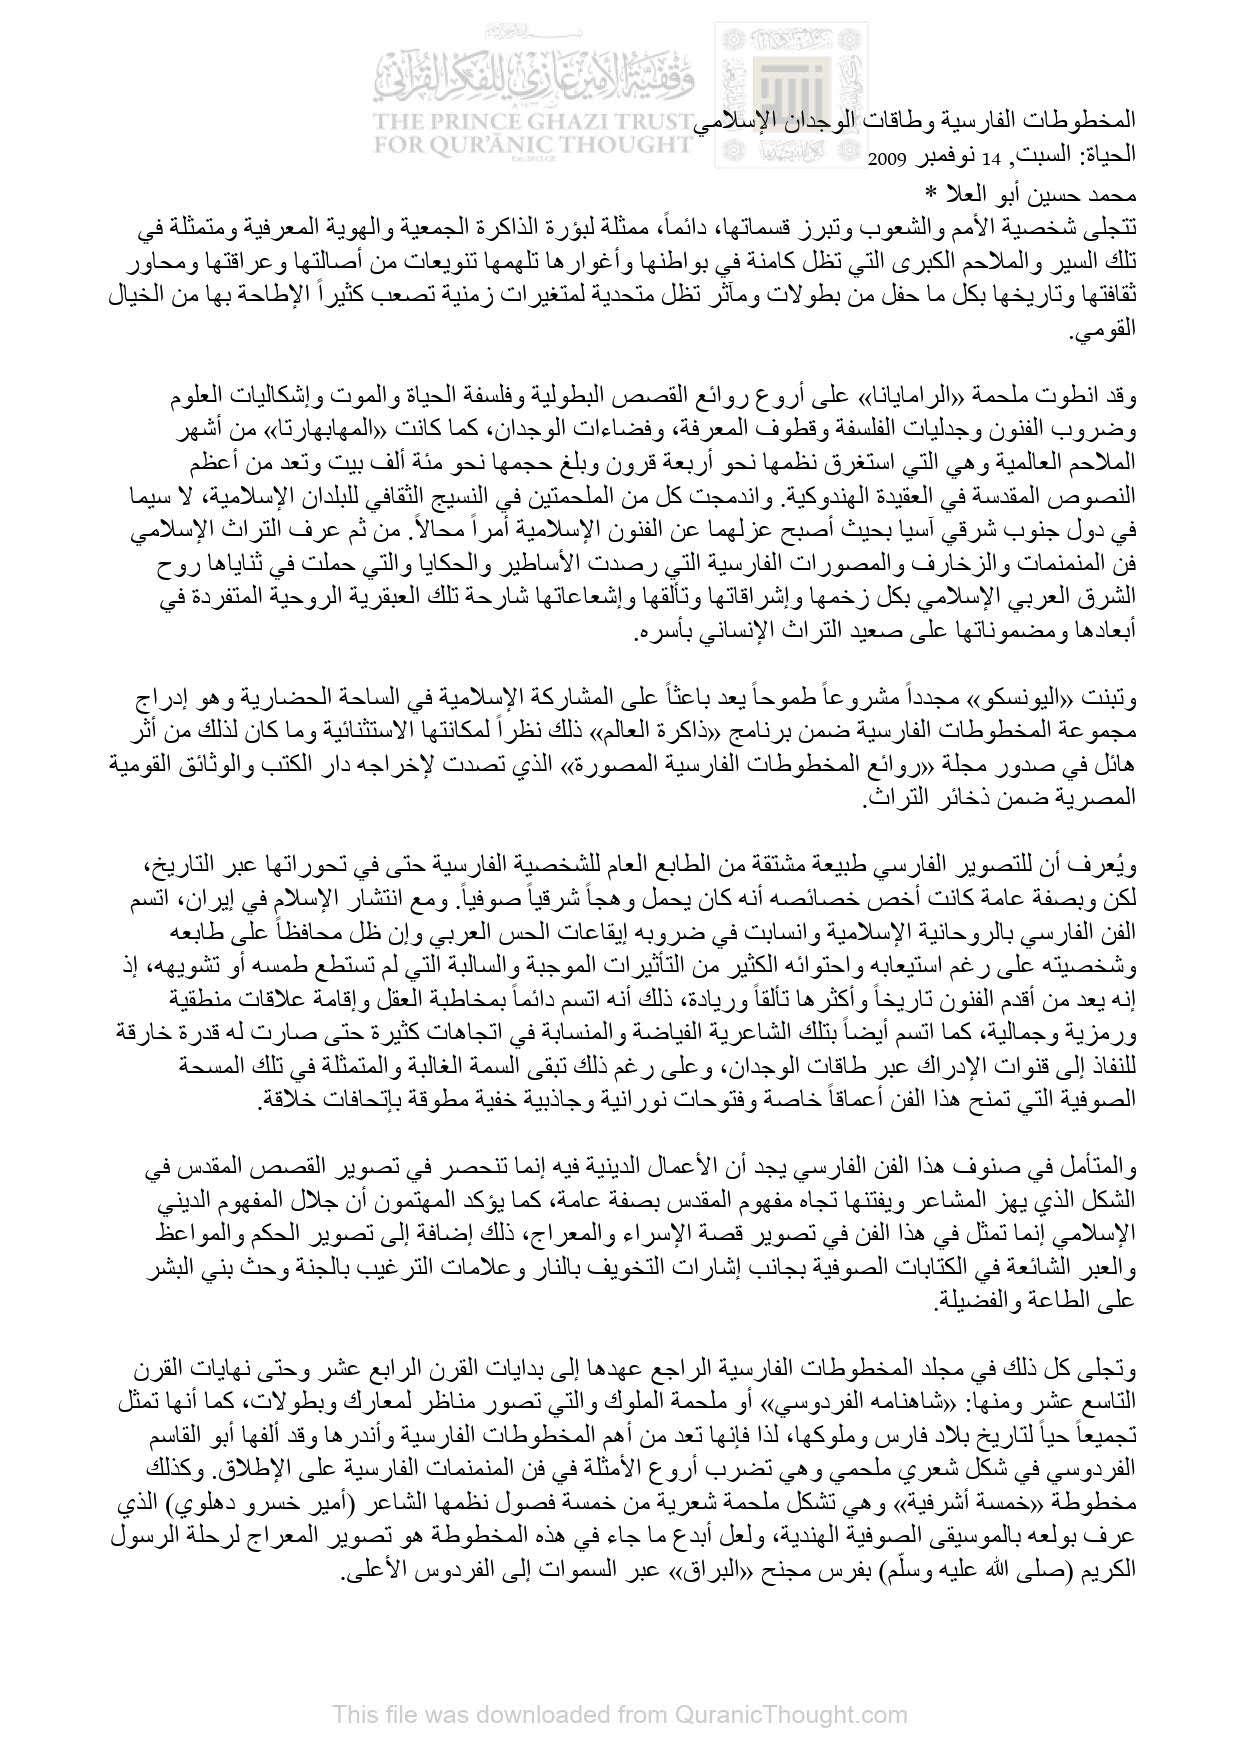 المخطوطات الفارسية وطاقات الوجدان الإسلامي _ مقالة في جريدة الحياة